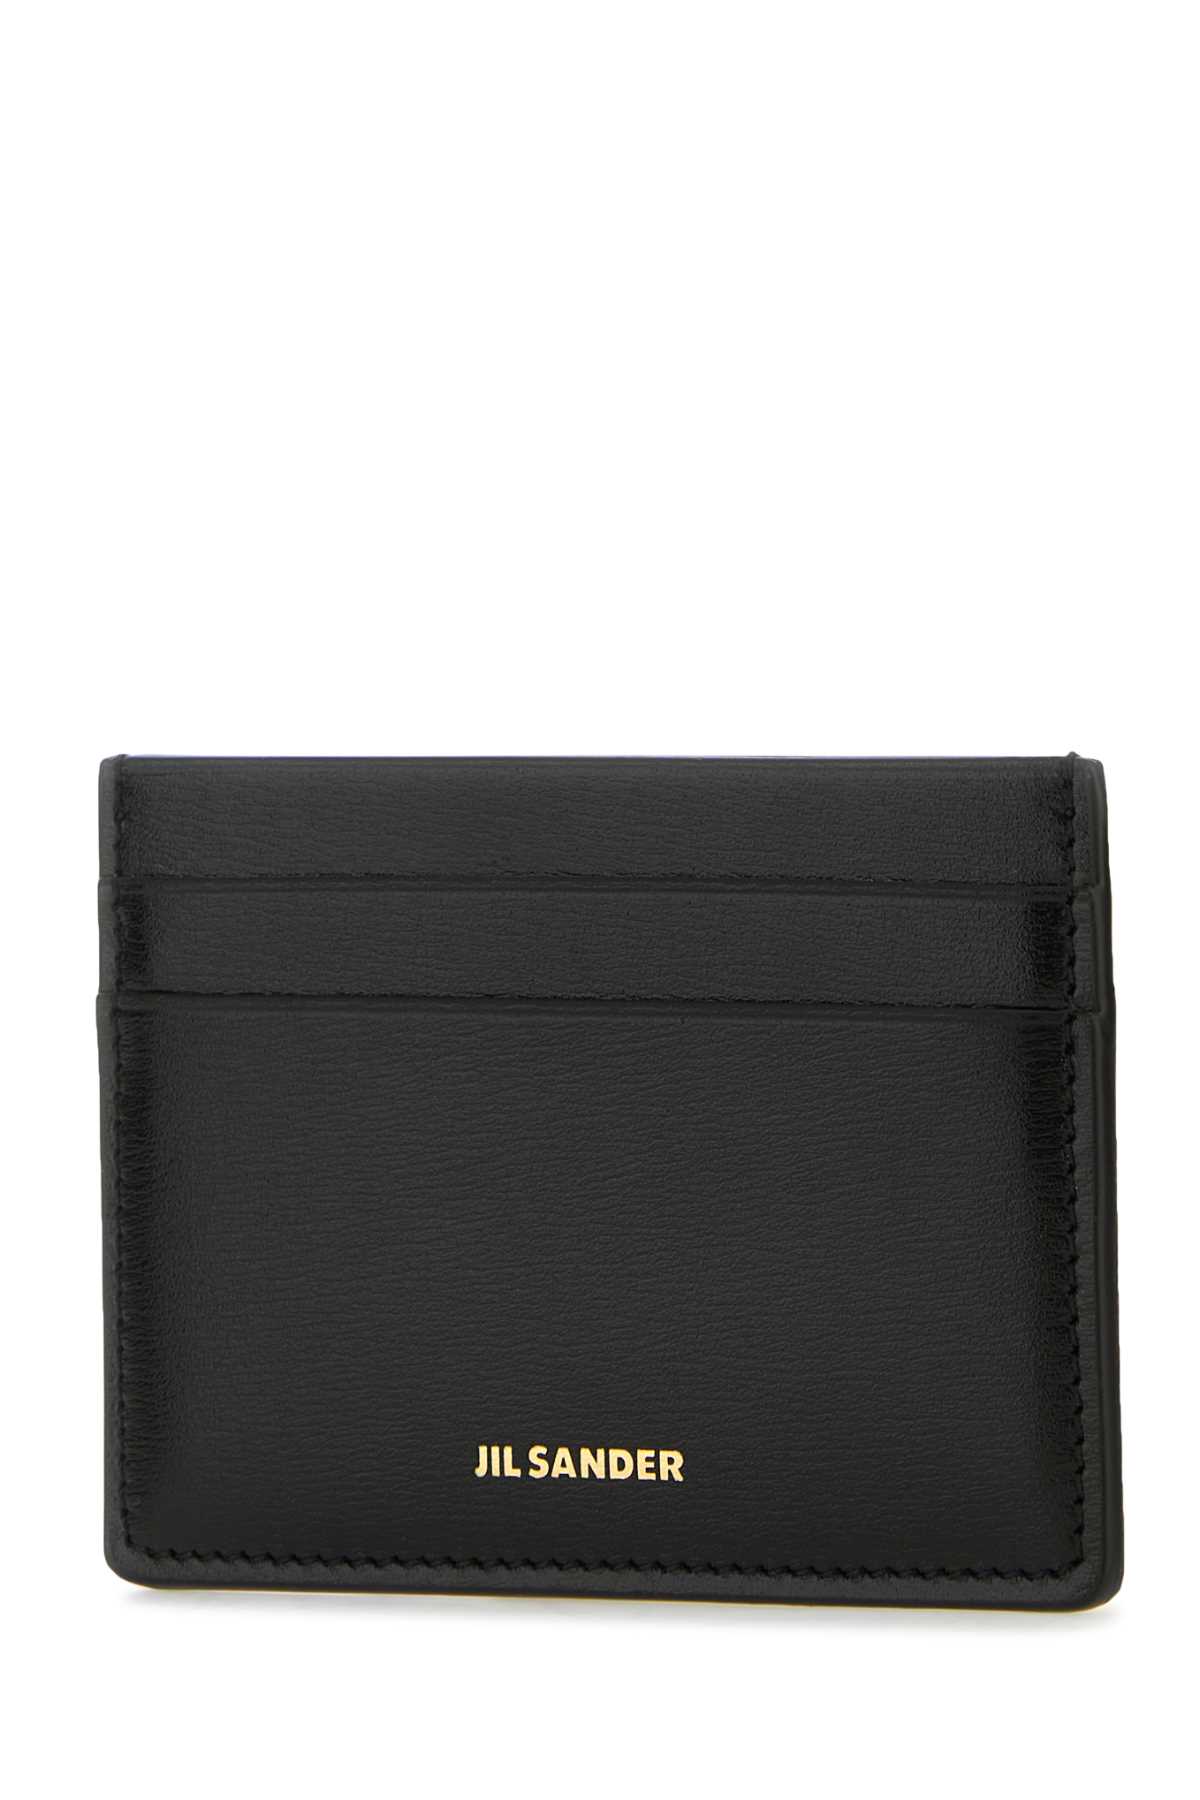 Jil Sander Black Leather Card Holder In 001